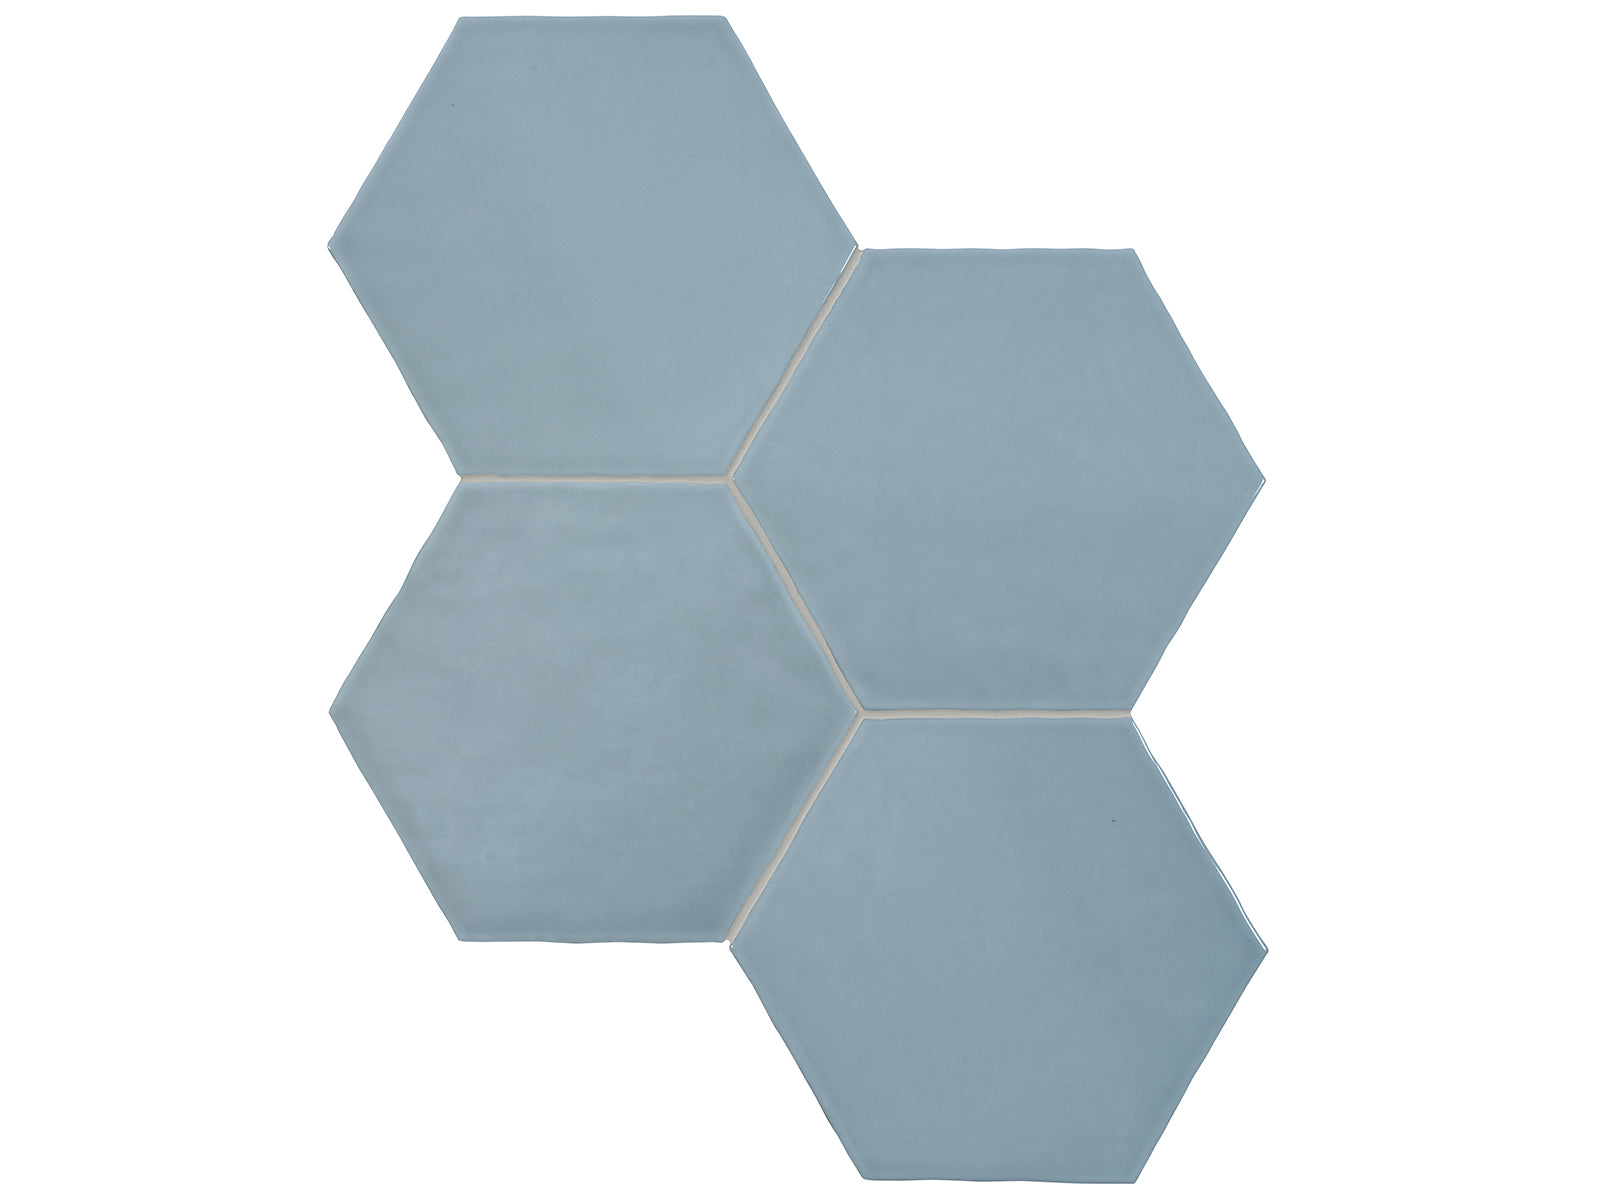 6 in Teramoda Sky Hexagon Glossy Pressed Glazed Ceramic Tile